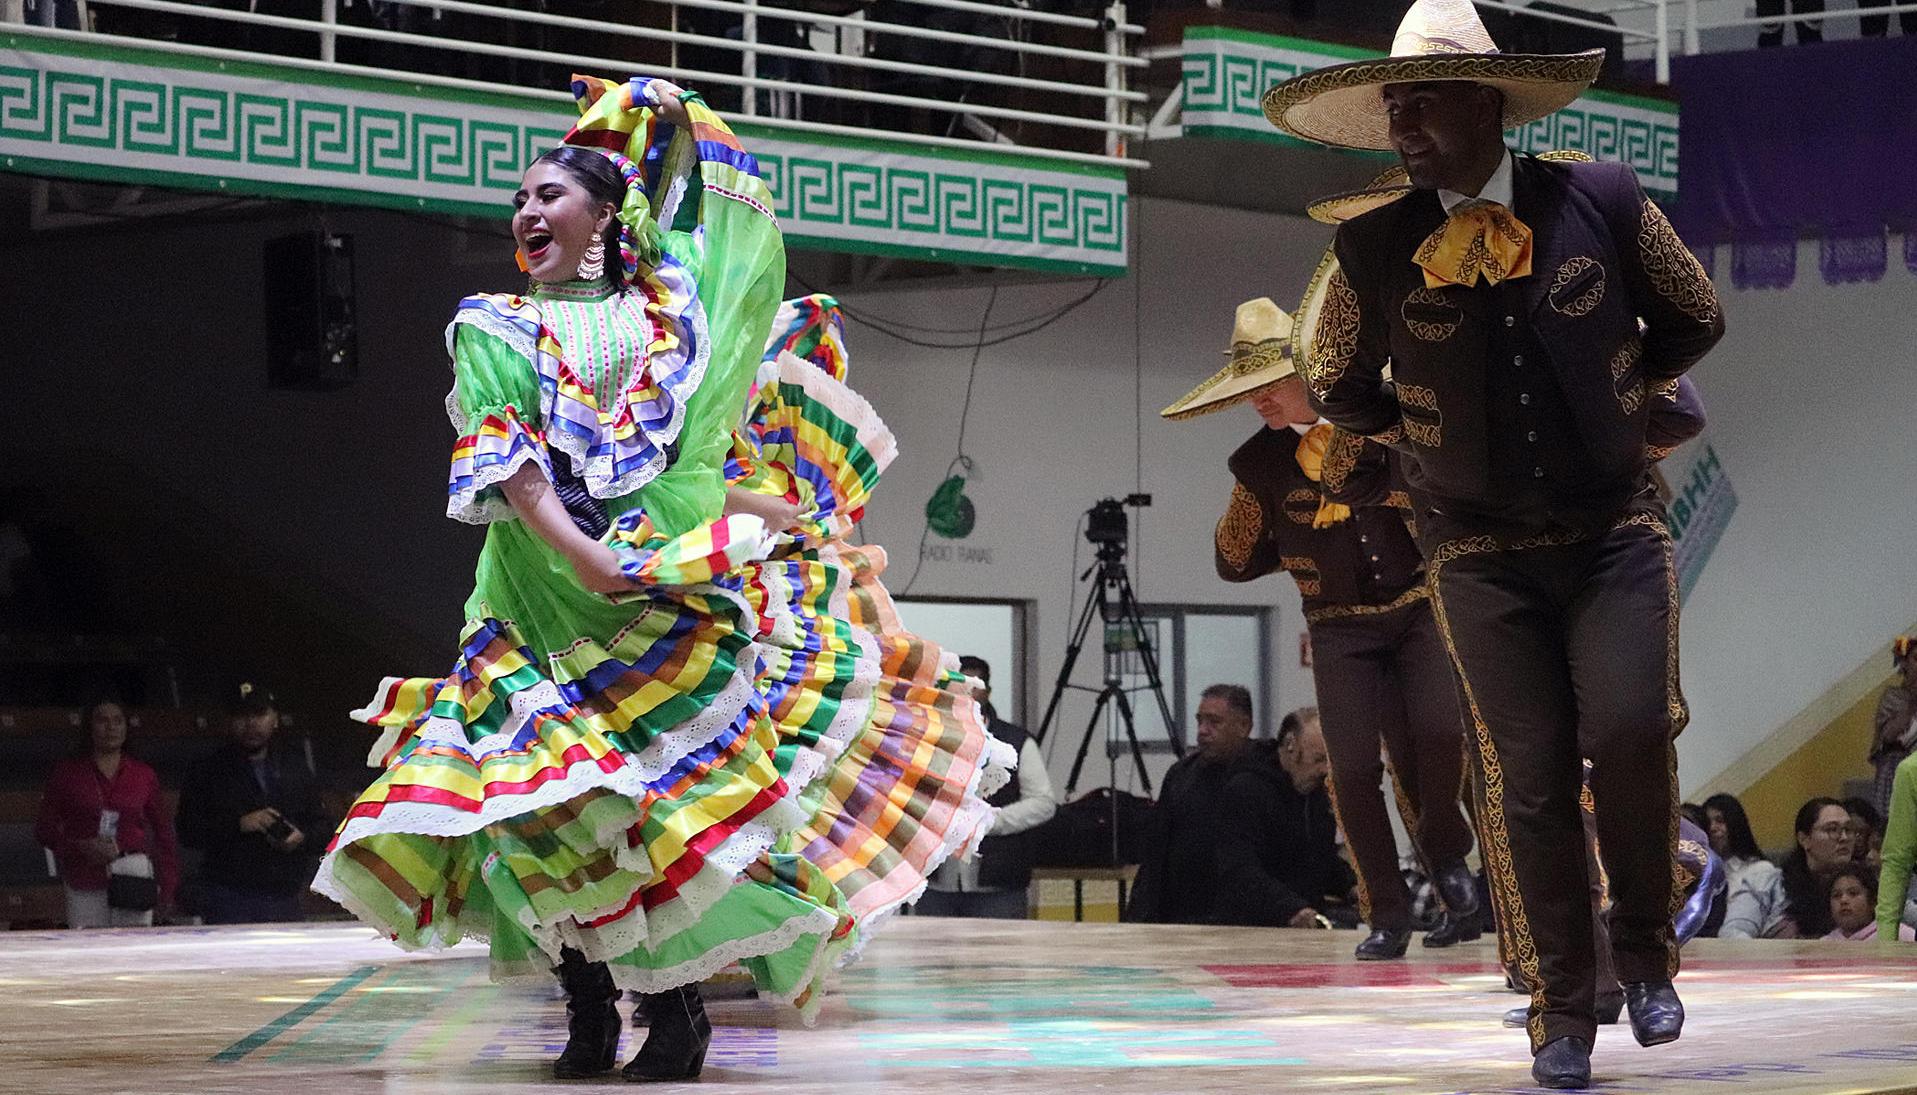 Bailadores de huapango se presenta la ciudad de San Jaoquín, Querétaro.